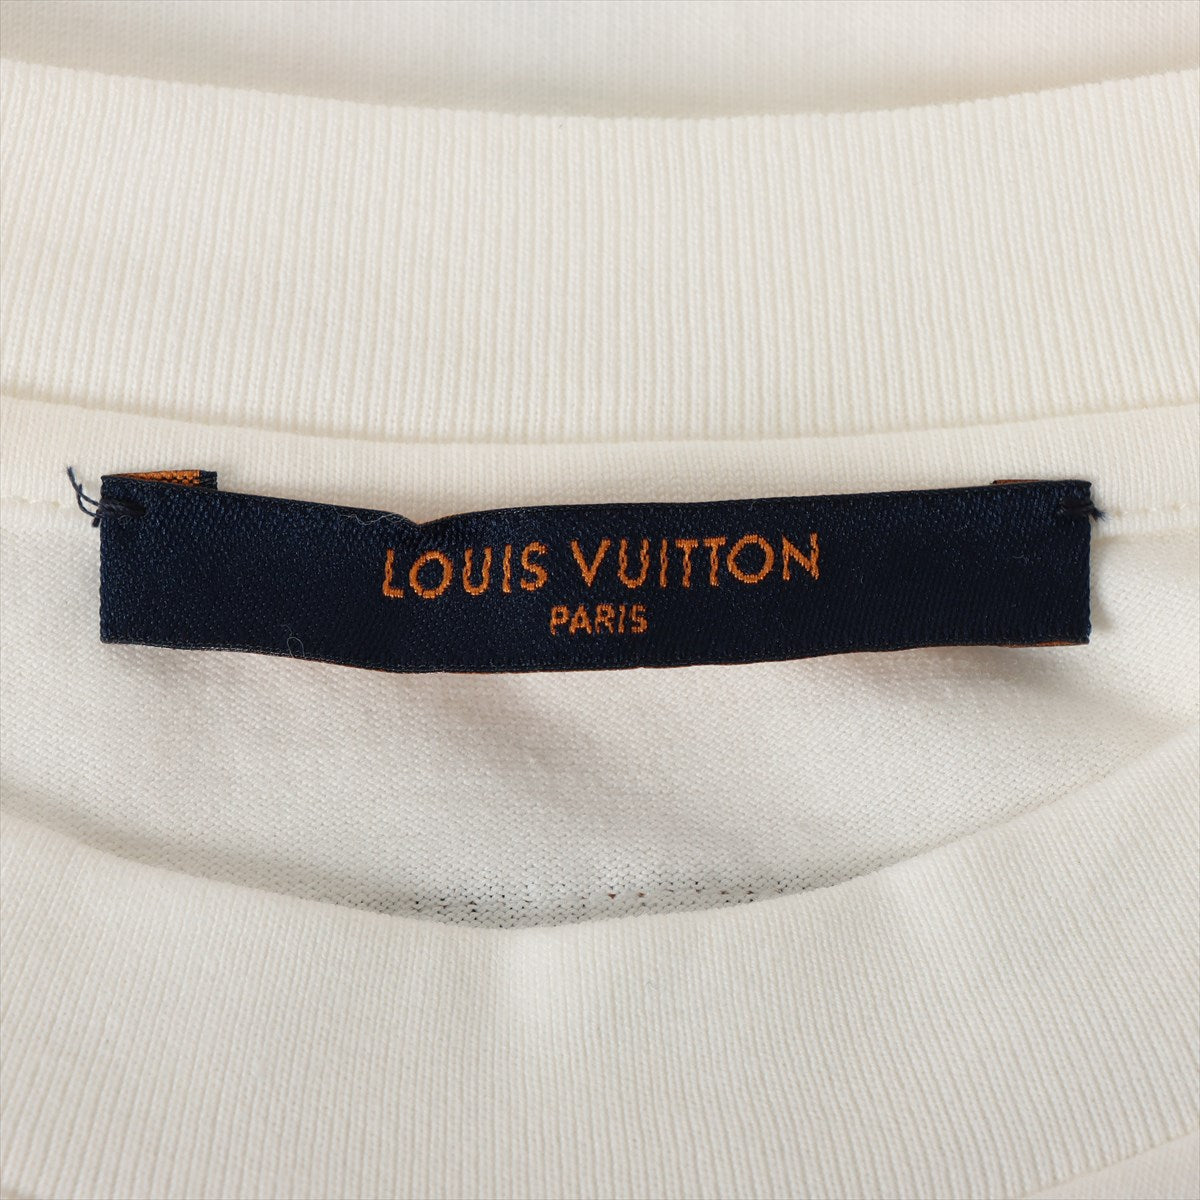 ルイヴィトン 21SS コットン Tシャツ XS メンズ ホワイト  パステルモノグラム インサイドアウト RM211M